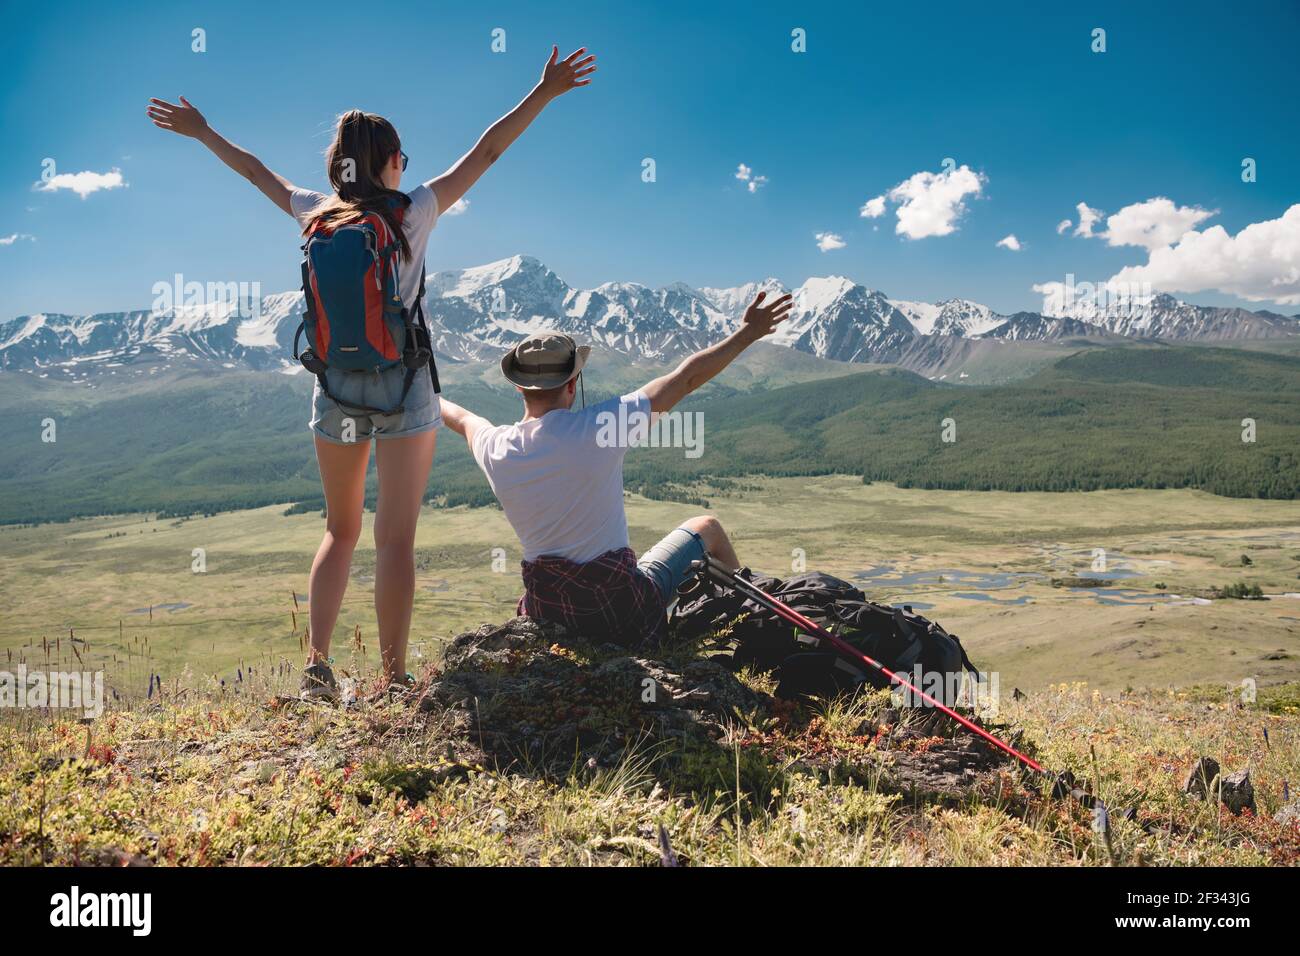 Un couple heureux de jeunes randonneurs se tient debout avec les bras levés sur fond de montagnes enneigées Banque D'Images